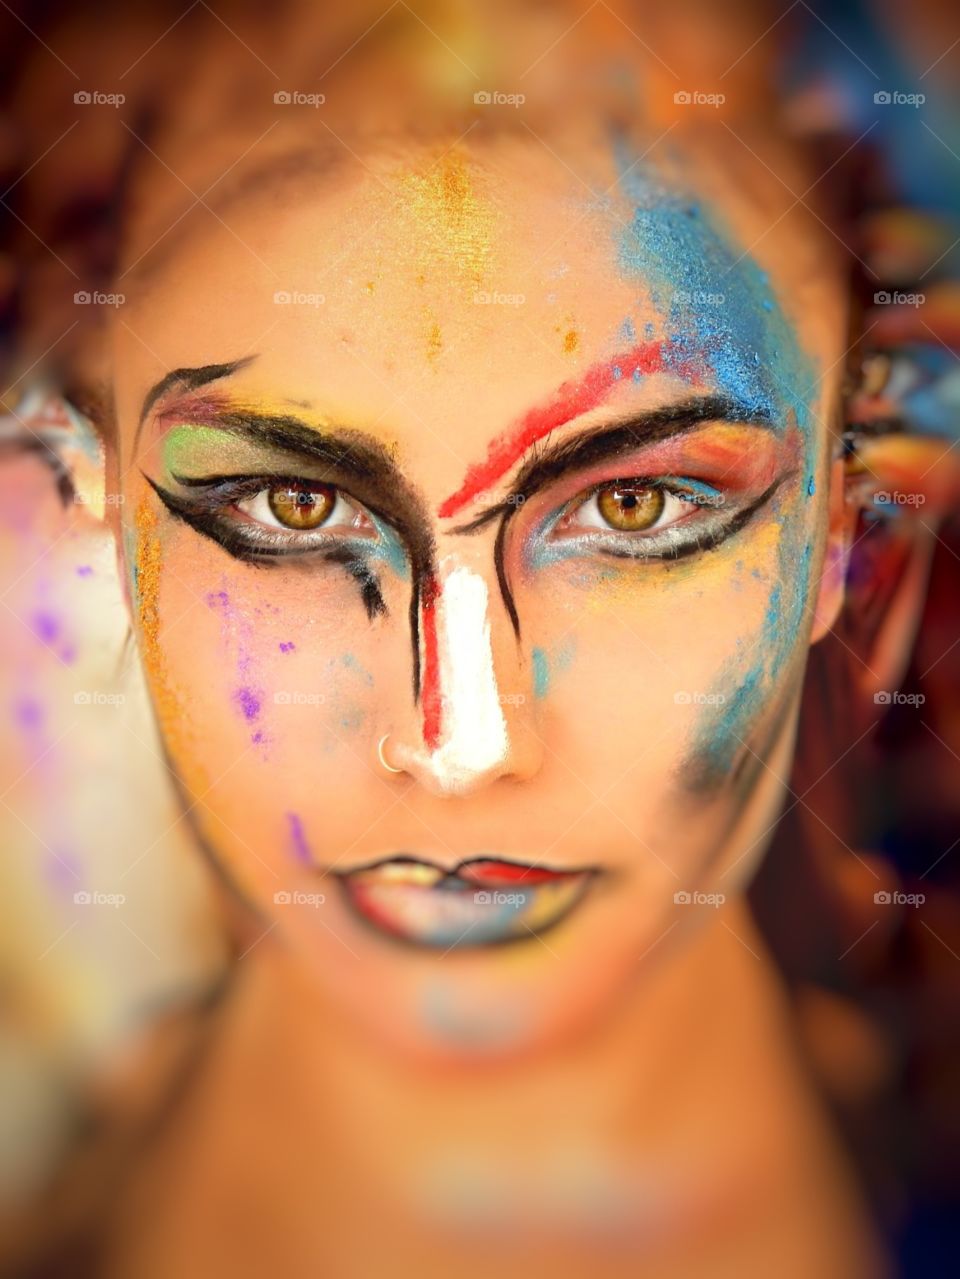 Makeup art